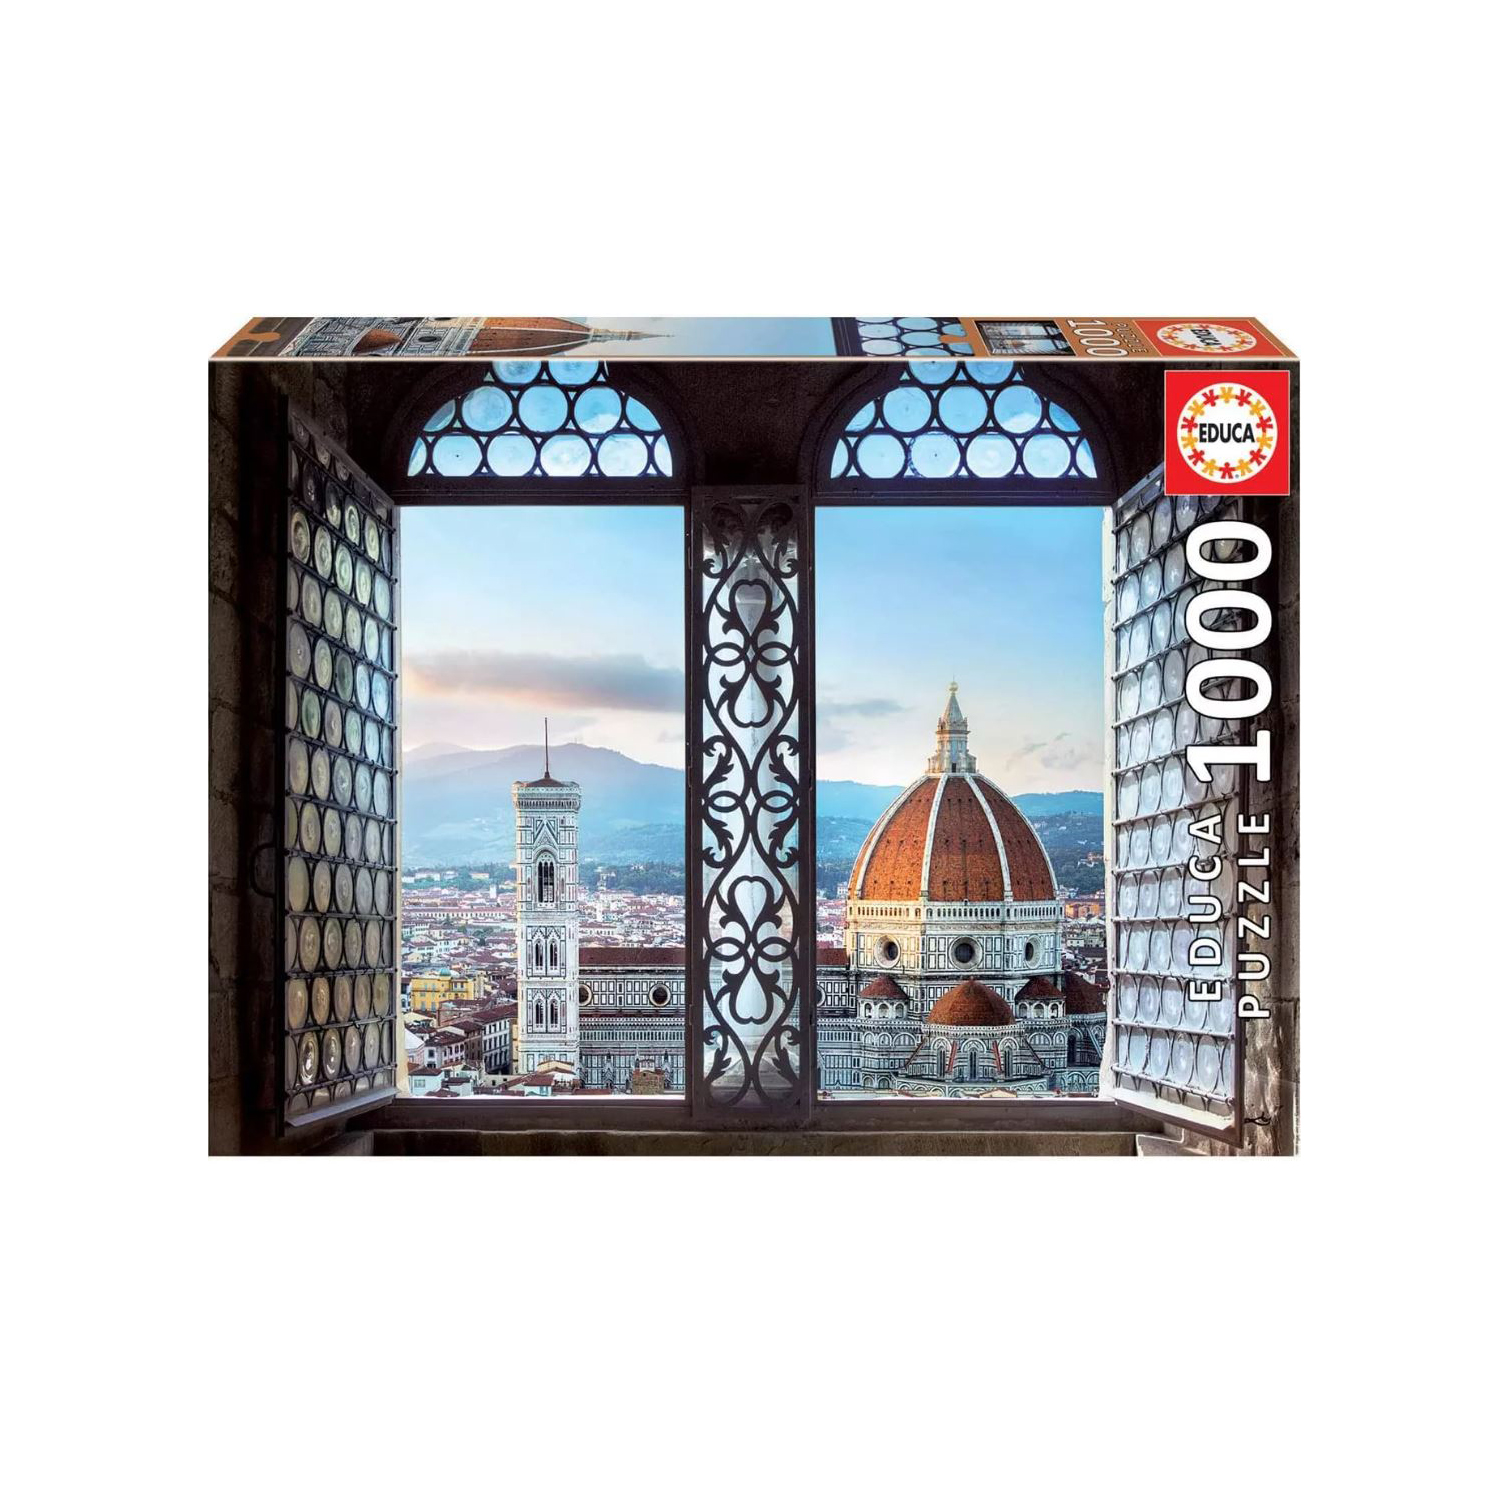 Educa - Educa - Vista de Florencia Puzzle, 1000 Piezas, Multicolor (18460)